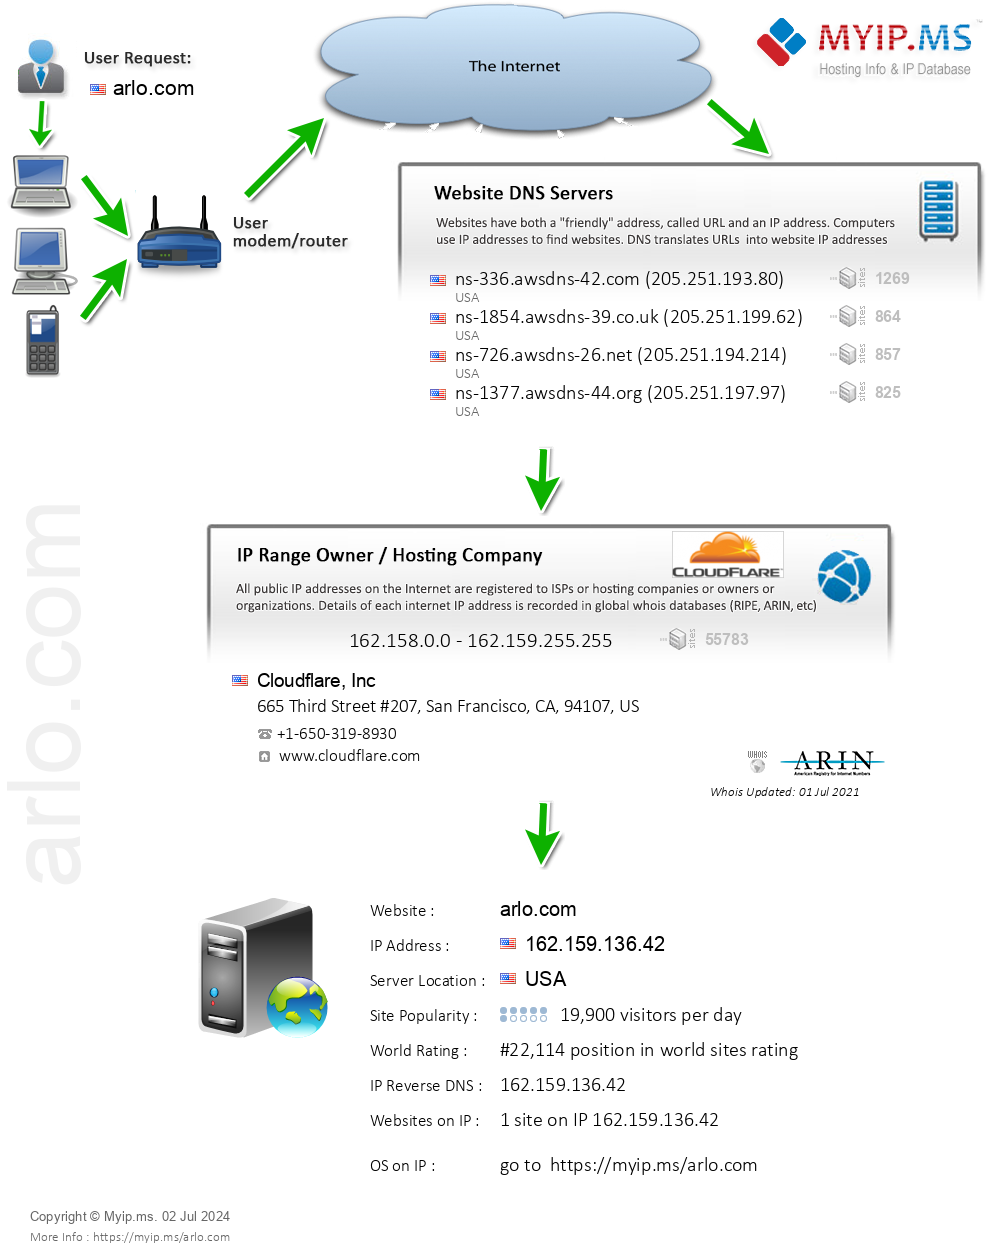 Arlo.com - Website Hosting Visual IP Diagram